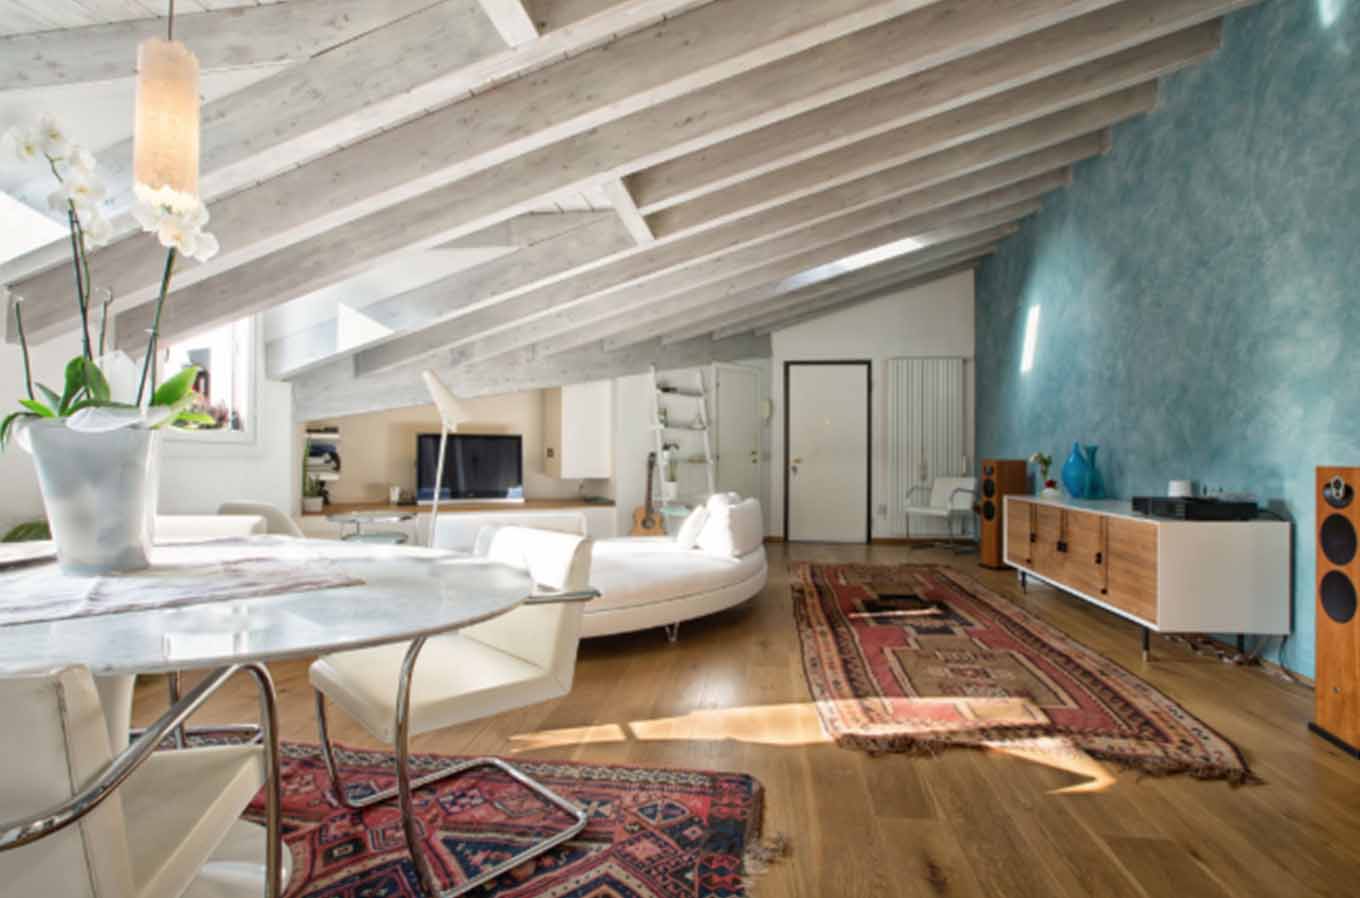 conciergerie airbnb gestion d'appartements location courte durée paris